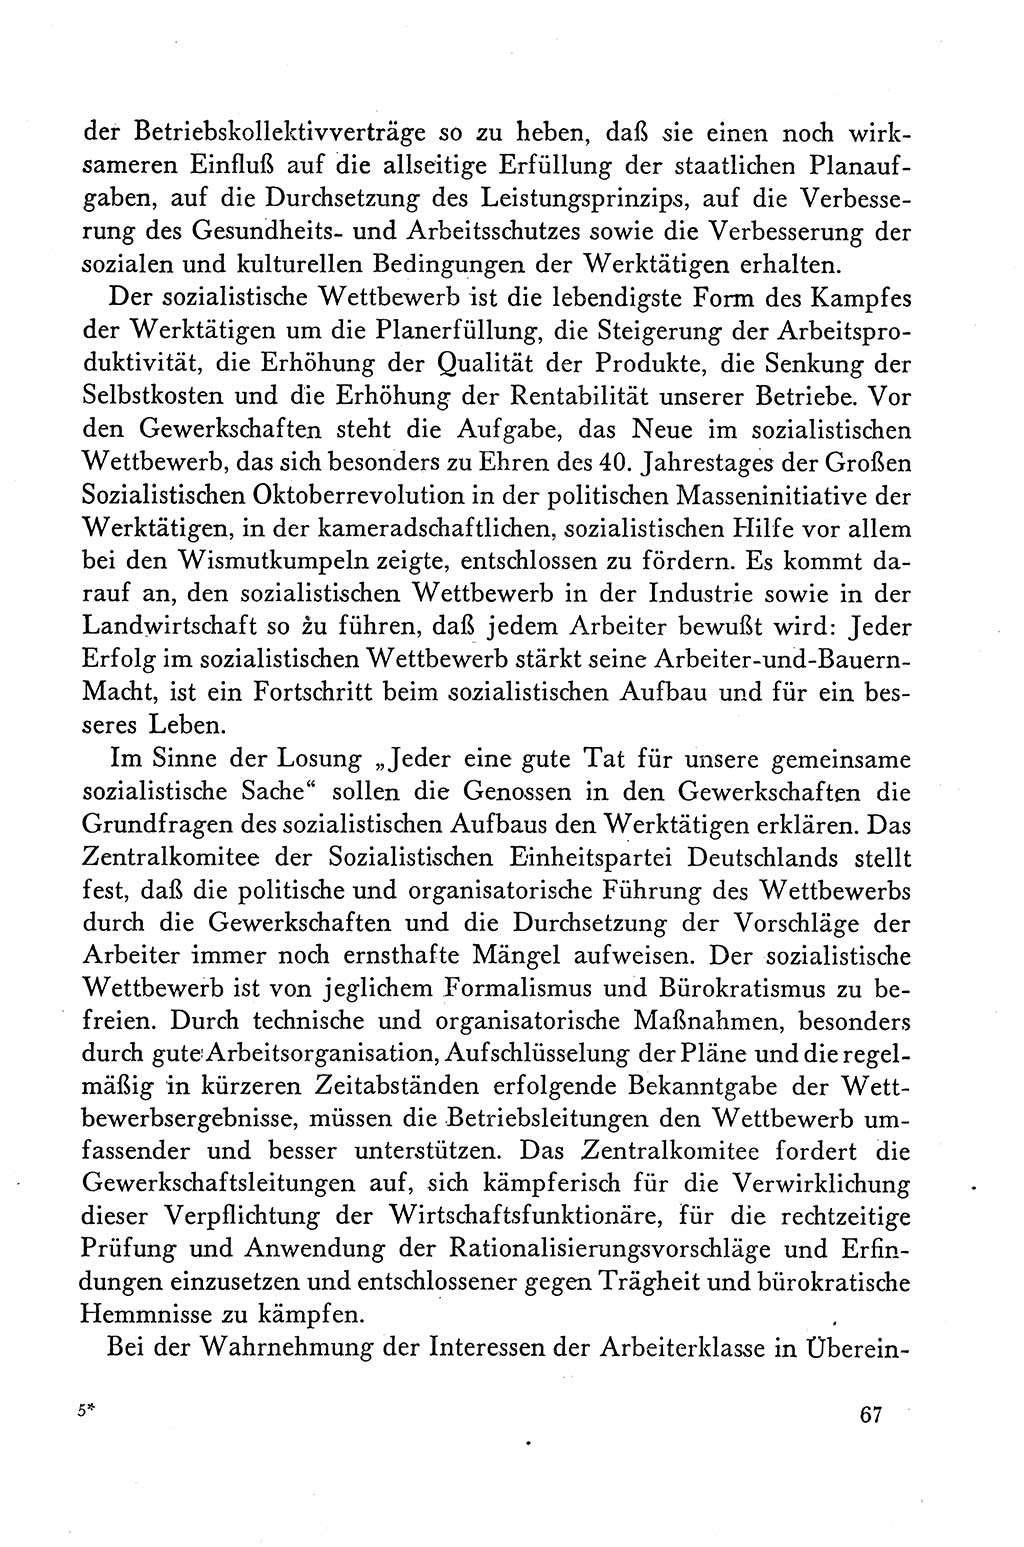 Dokumente der Sozialistischen Einheitspartei Deutschlands (SED) [Deutsche Demokratische Republik (DDR)] 1958-1959, Seite 67 (Dok. SED DDR 1958-1959, S. 67)